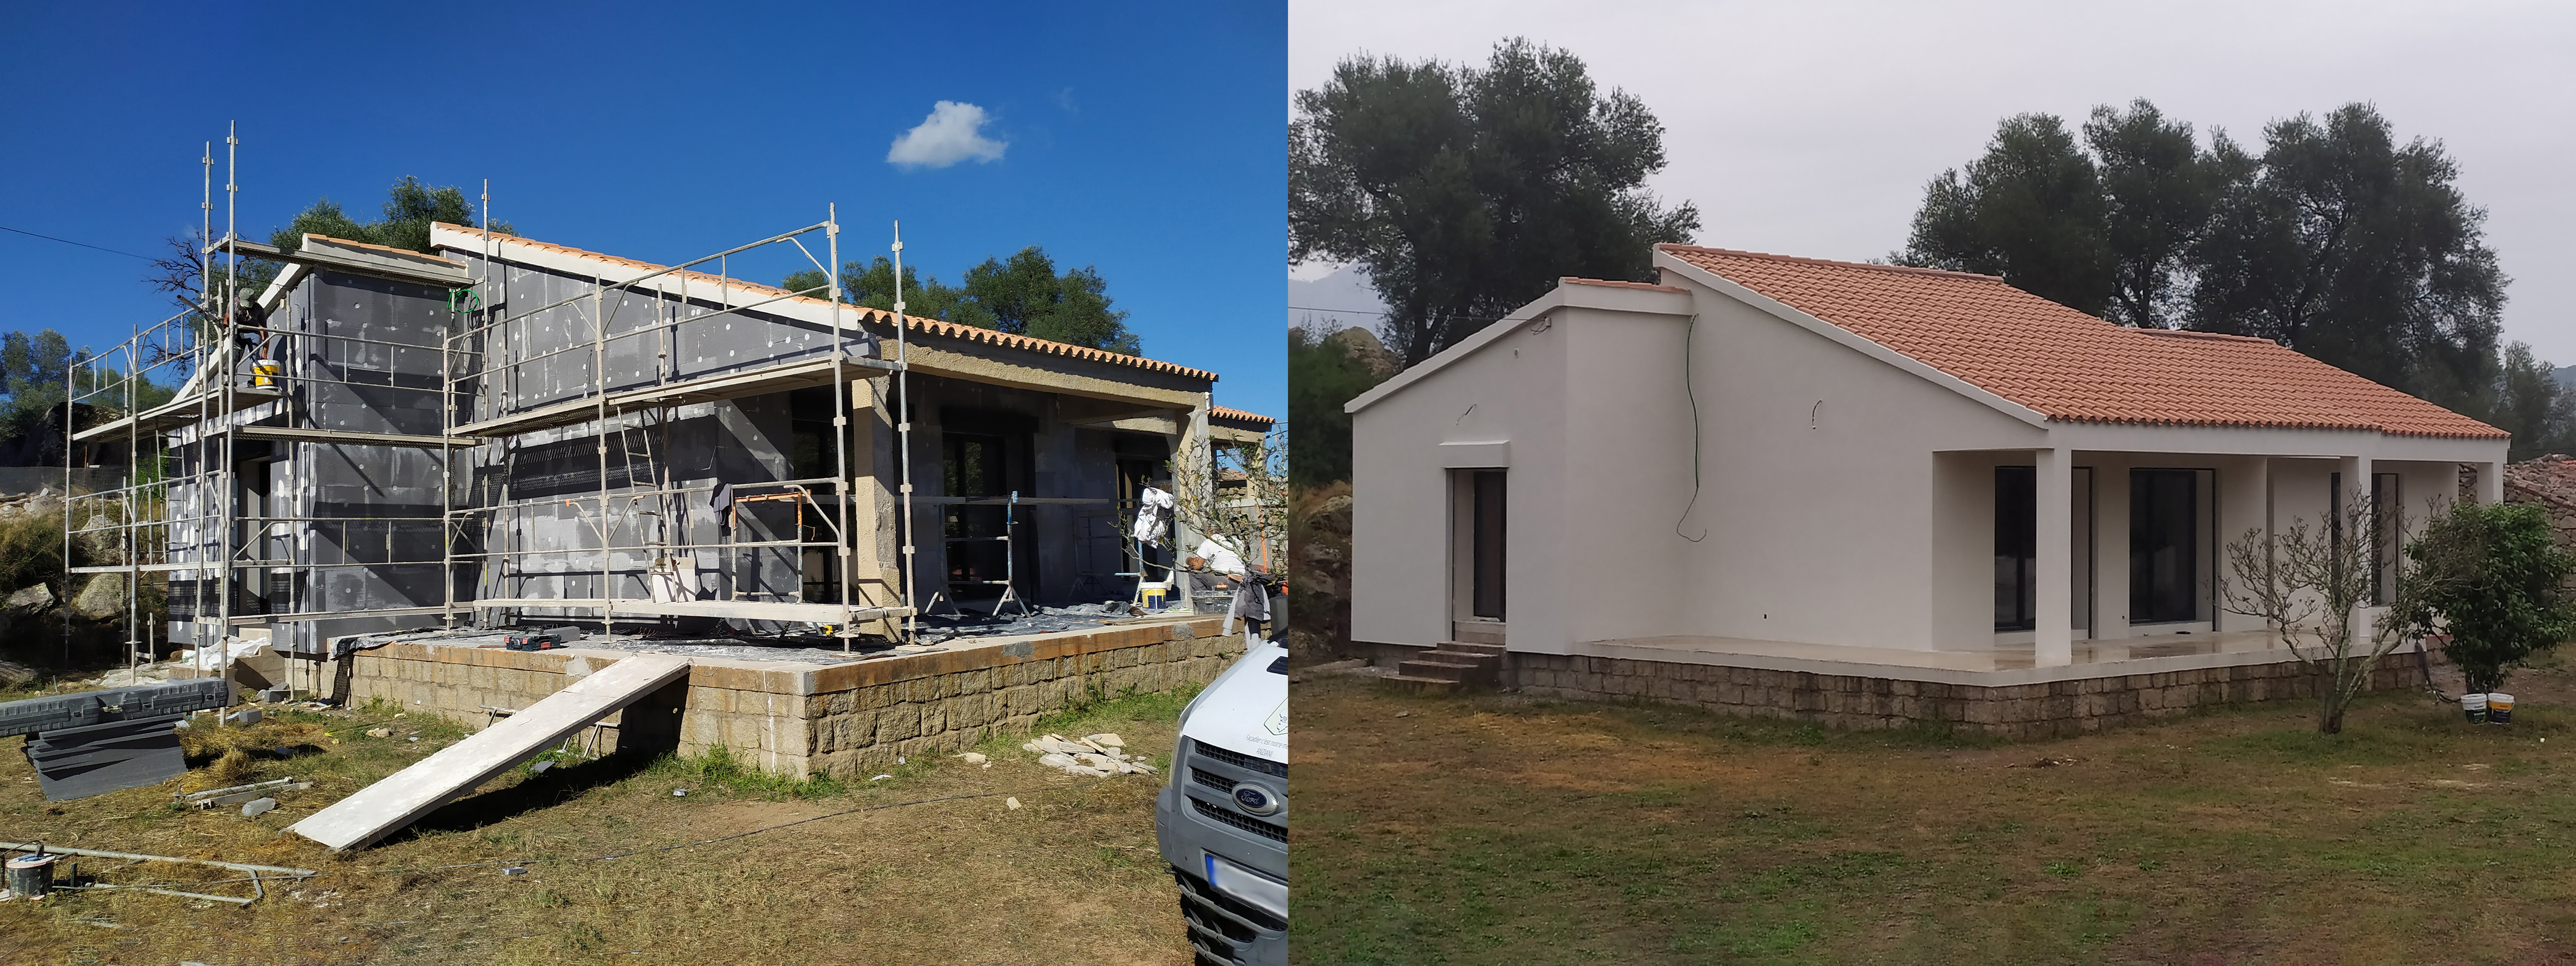 Réalisation de travaux de rénovation énergétique sur une maison individuelle (avant/après).